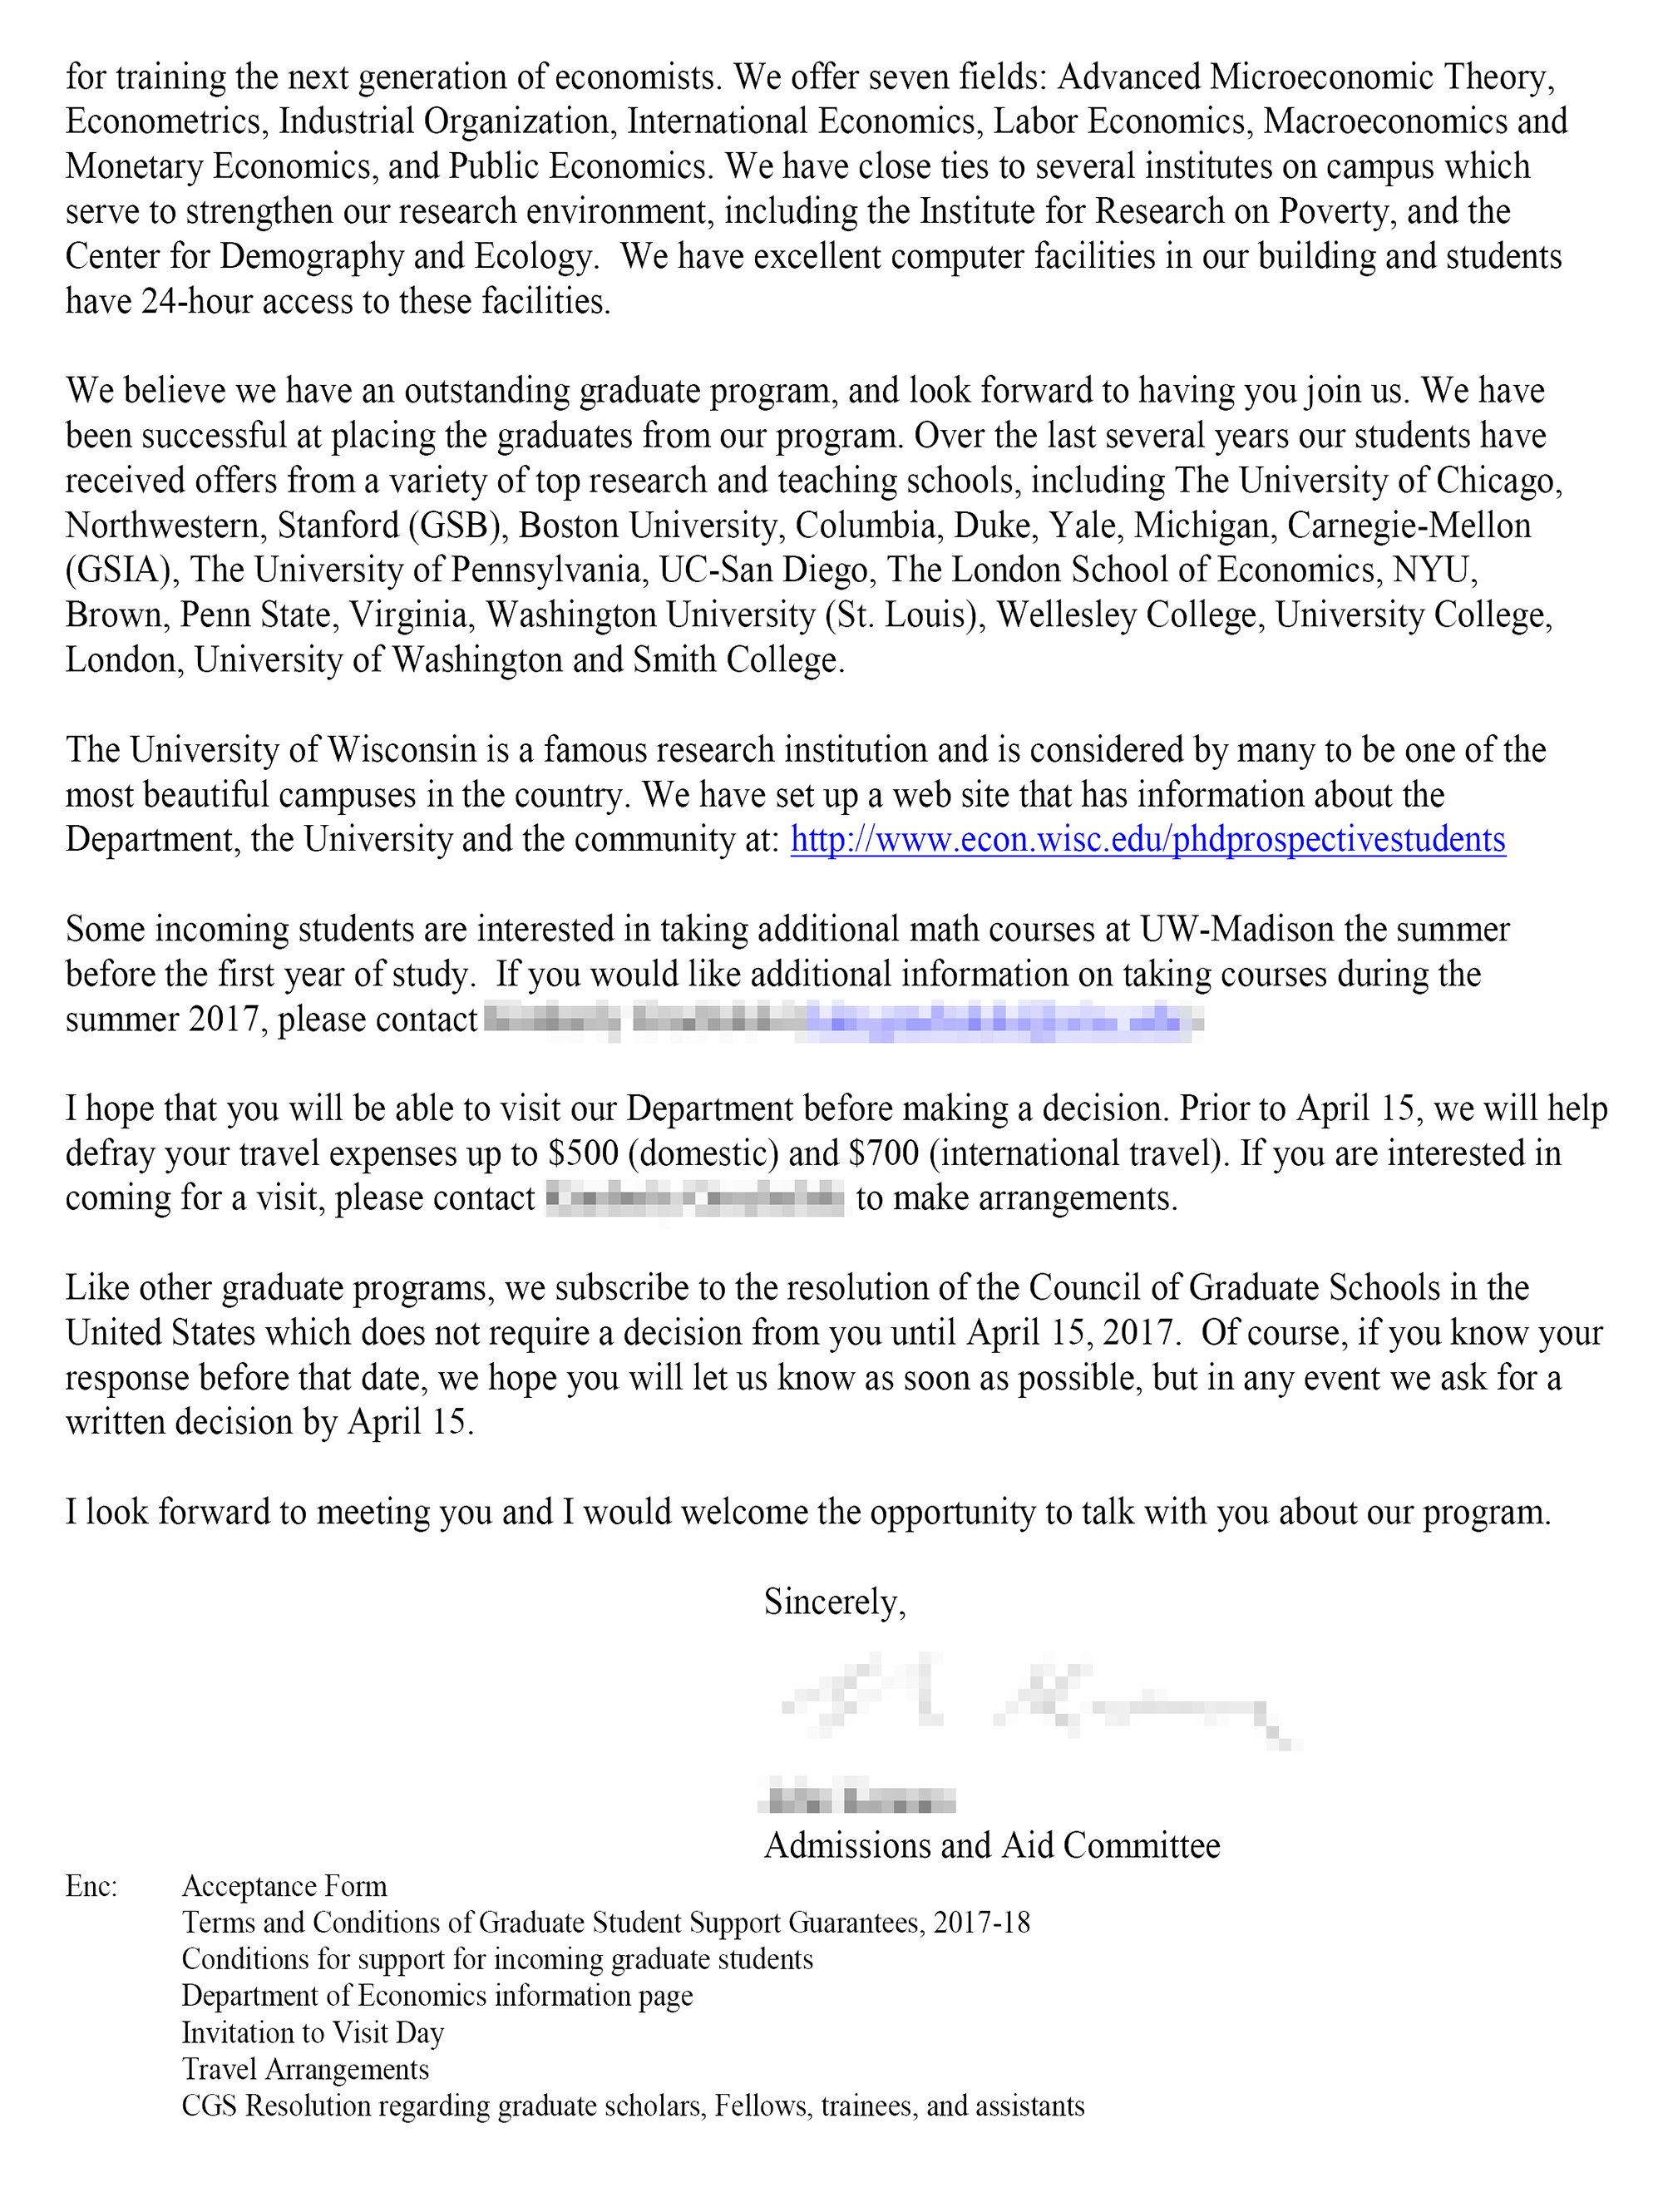 Это письмо о зачислении в Висконсинский университет